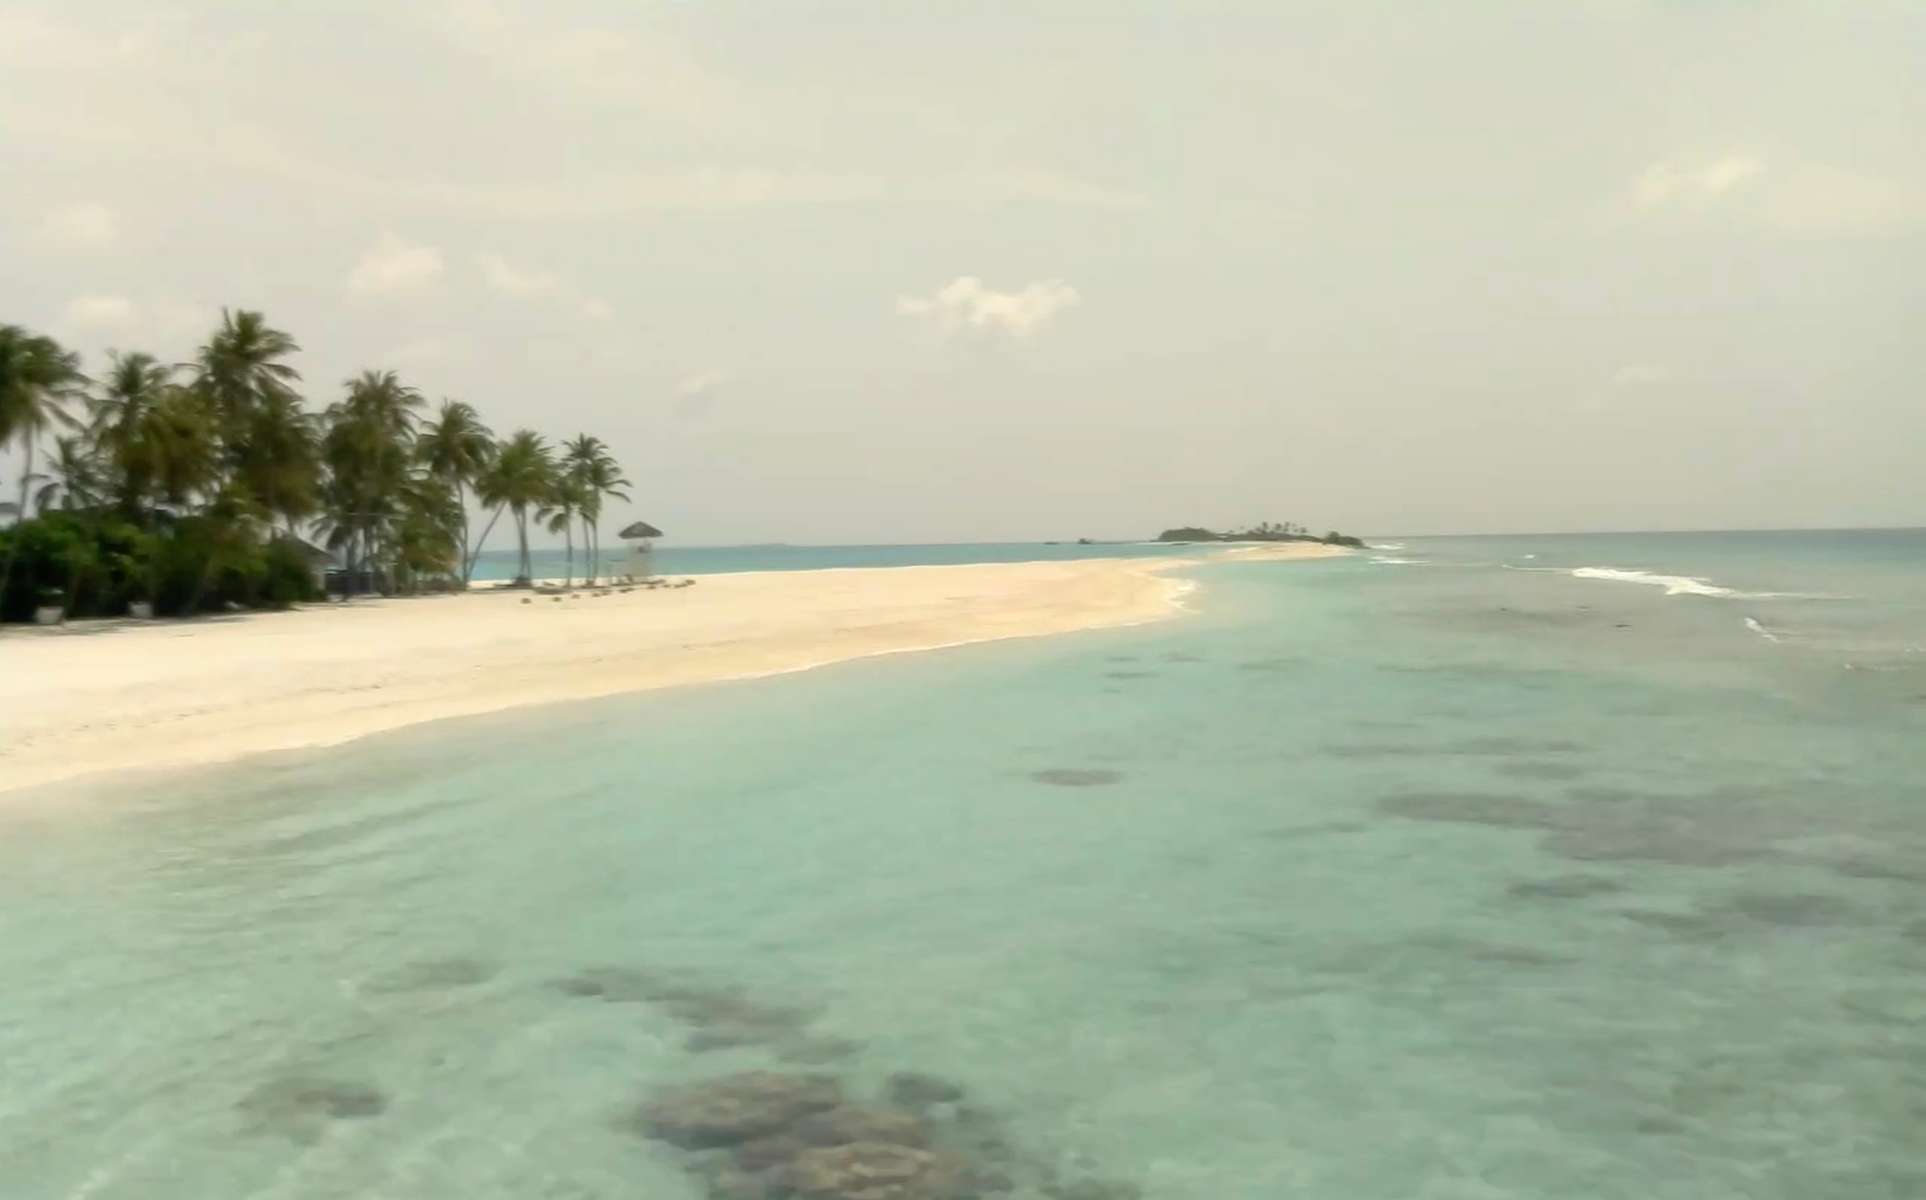 Finolhu Beach, Maldives. May 2, 2020, 10:12:24 PM PST